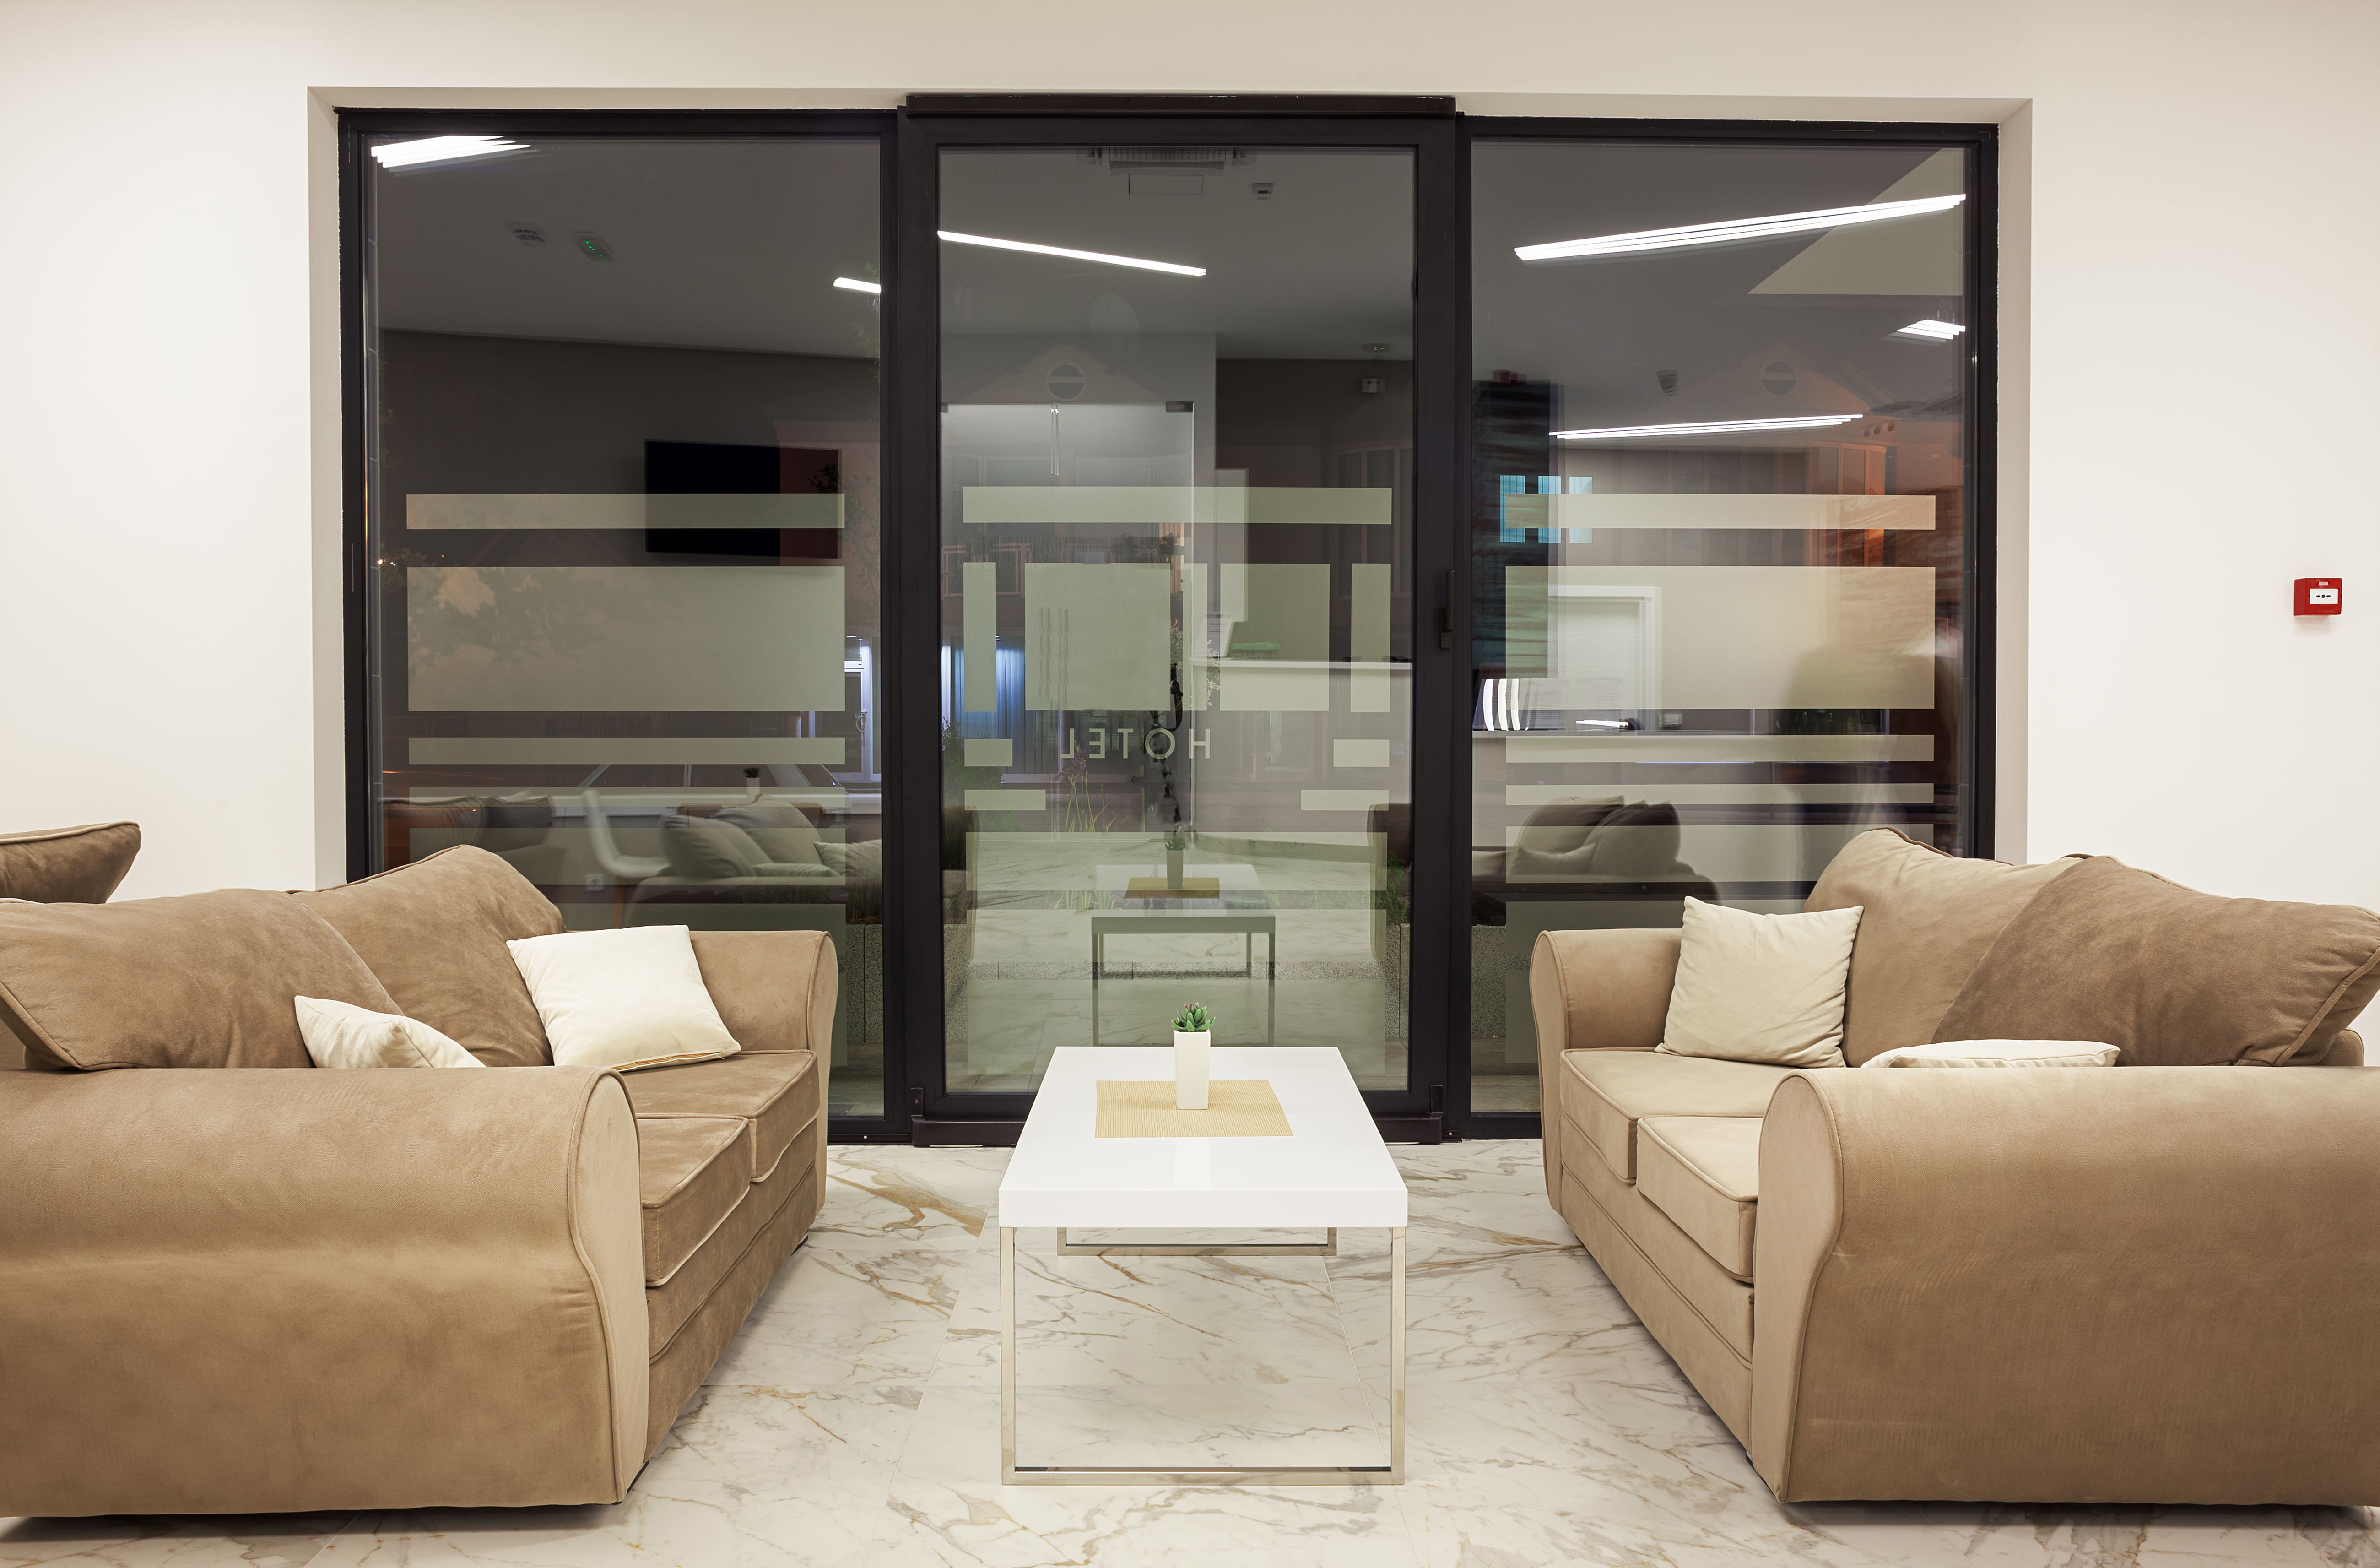 Imagem de um sofá reformado para inspirar o empreendedor a abrir uma loja de reforma de estofados